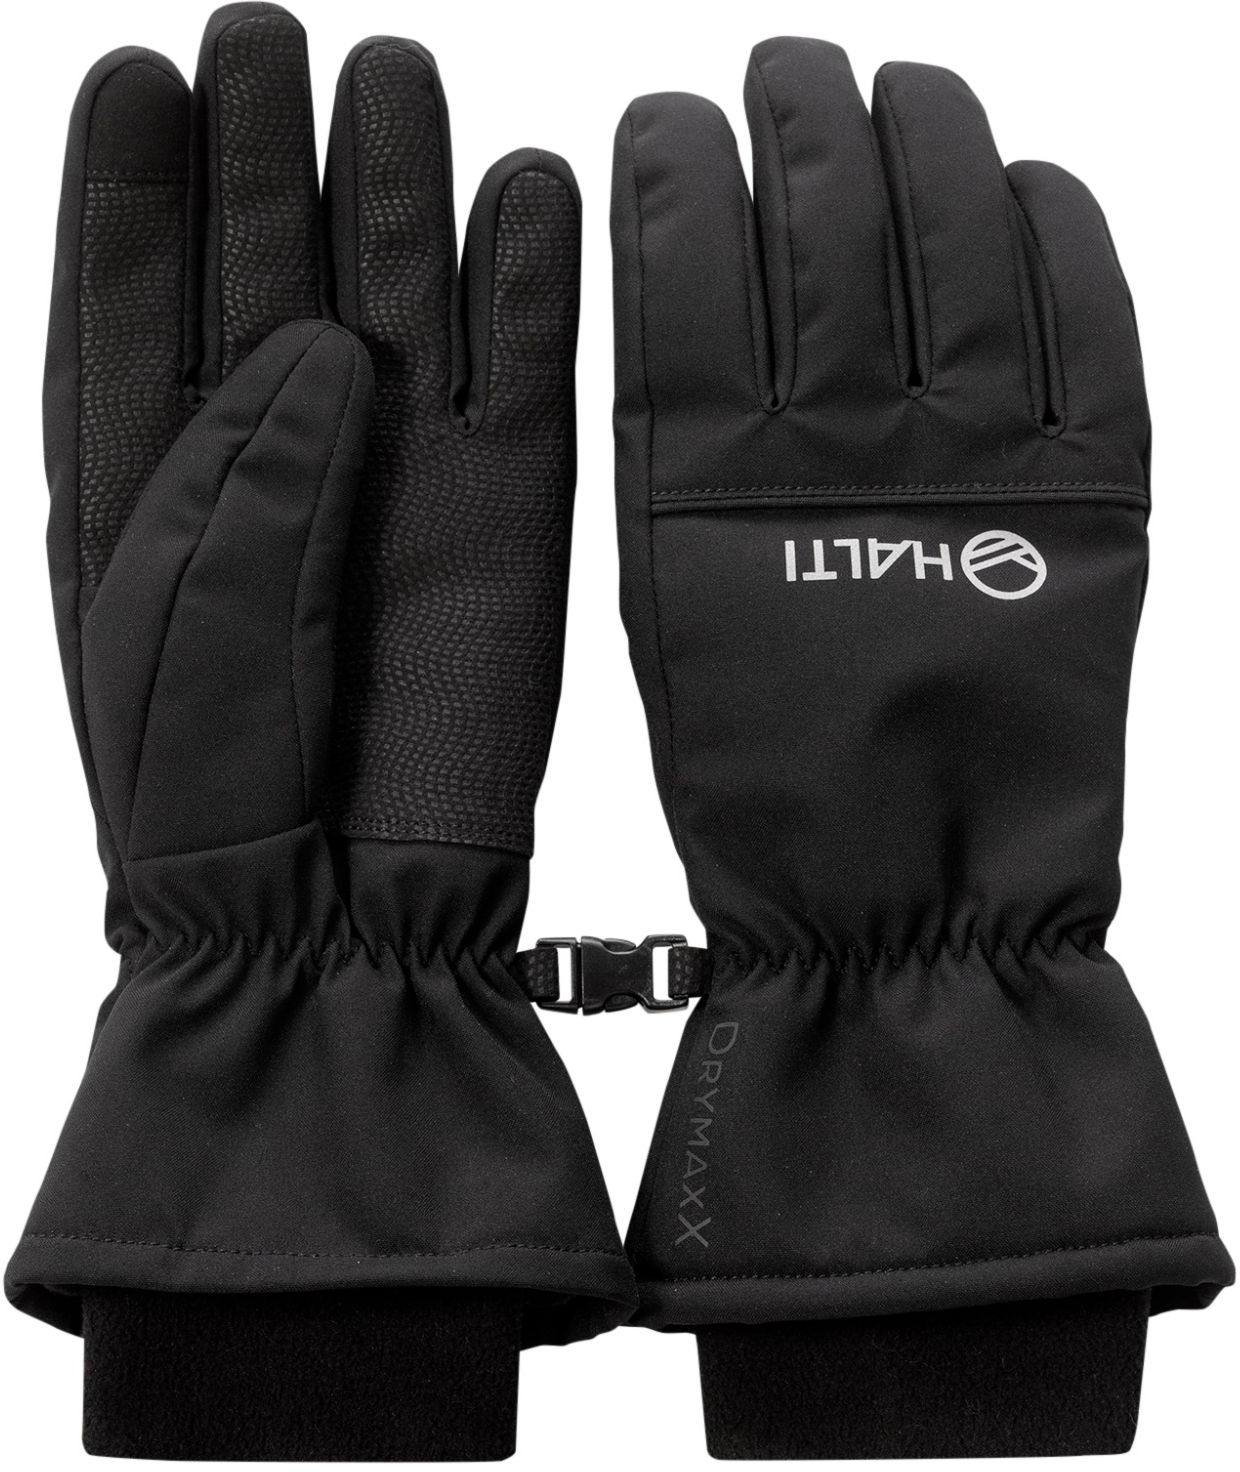 Image of Halti Alium DX Gloves